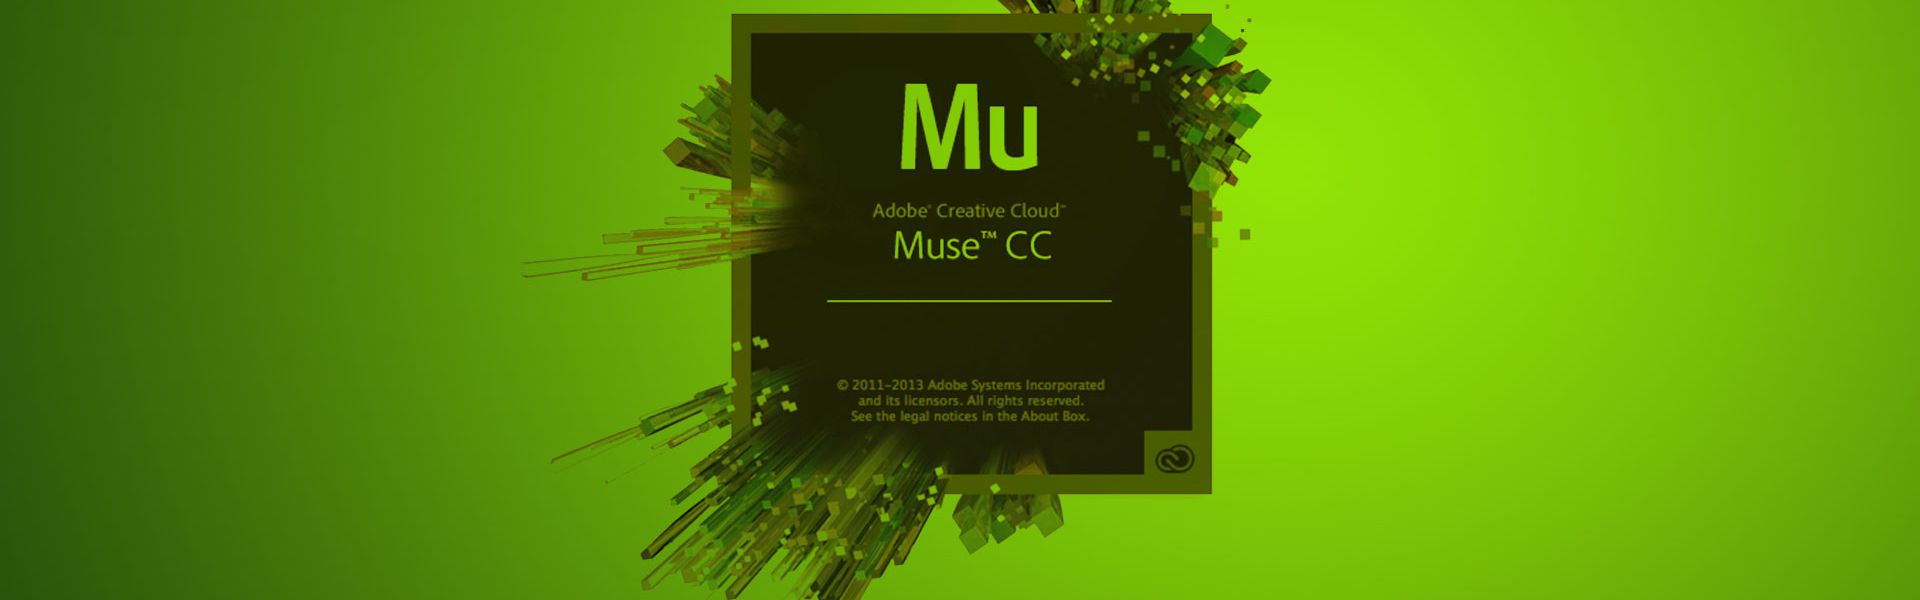 Eenvoudig websites maken met Adobe Muse